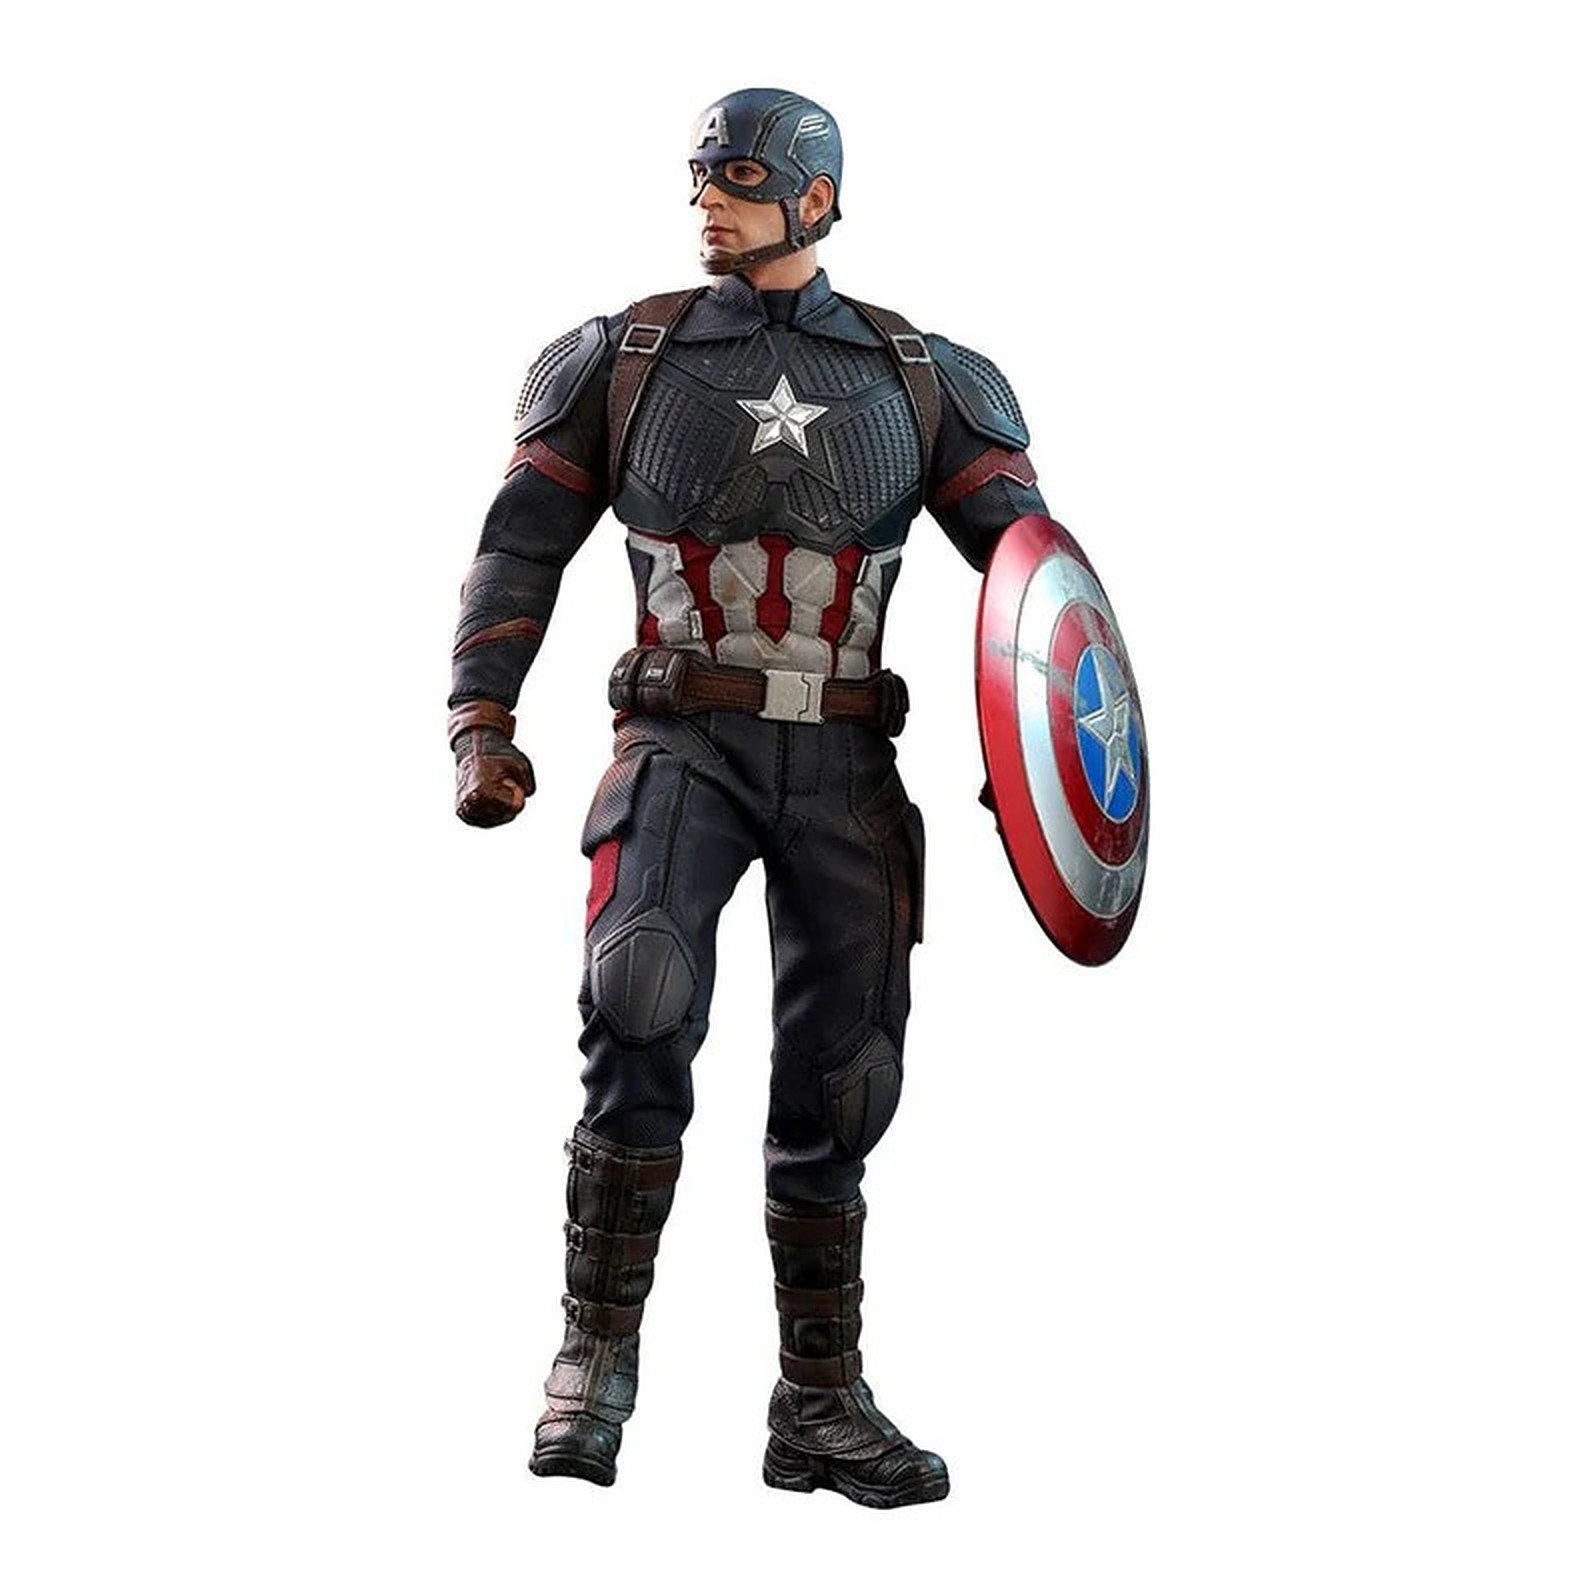 Captain America 32cm Action figure